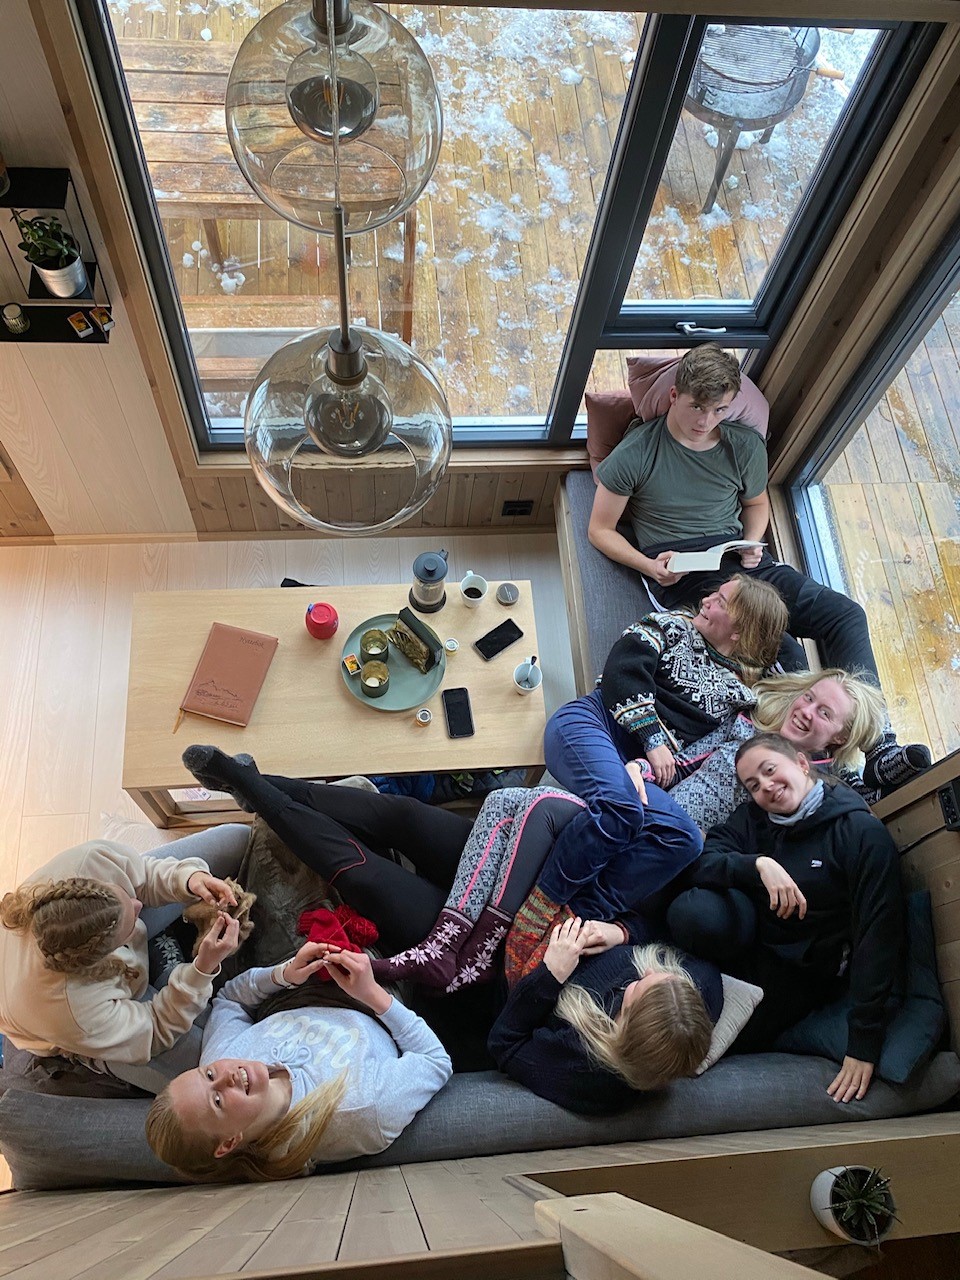 På hyttetur. Bilde tatt ovenfra av sju elever som sitter tett sammen i samme sofa.